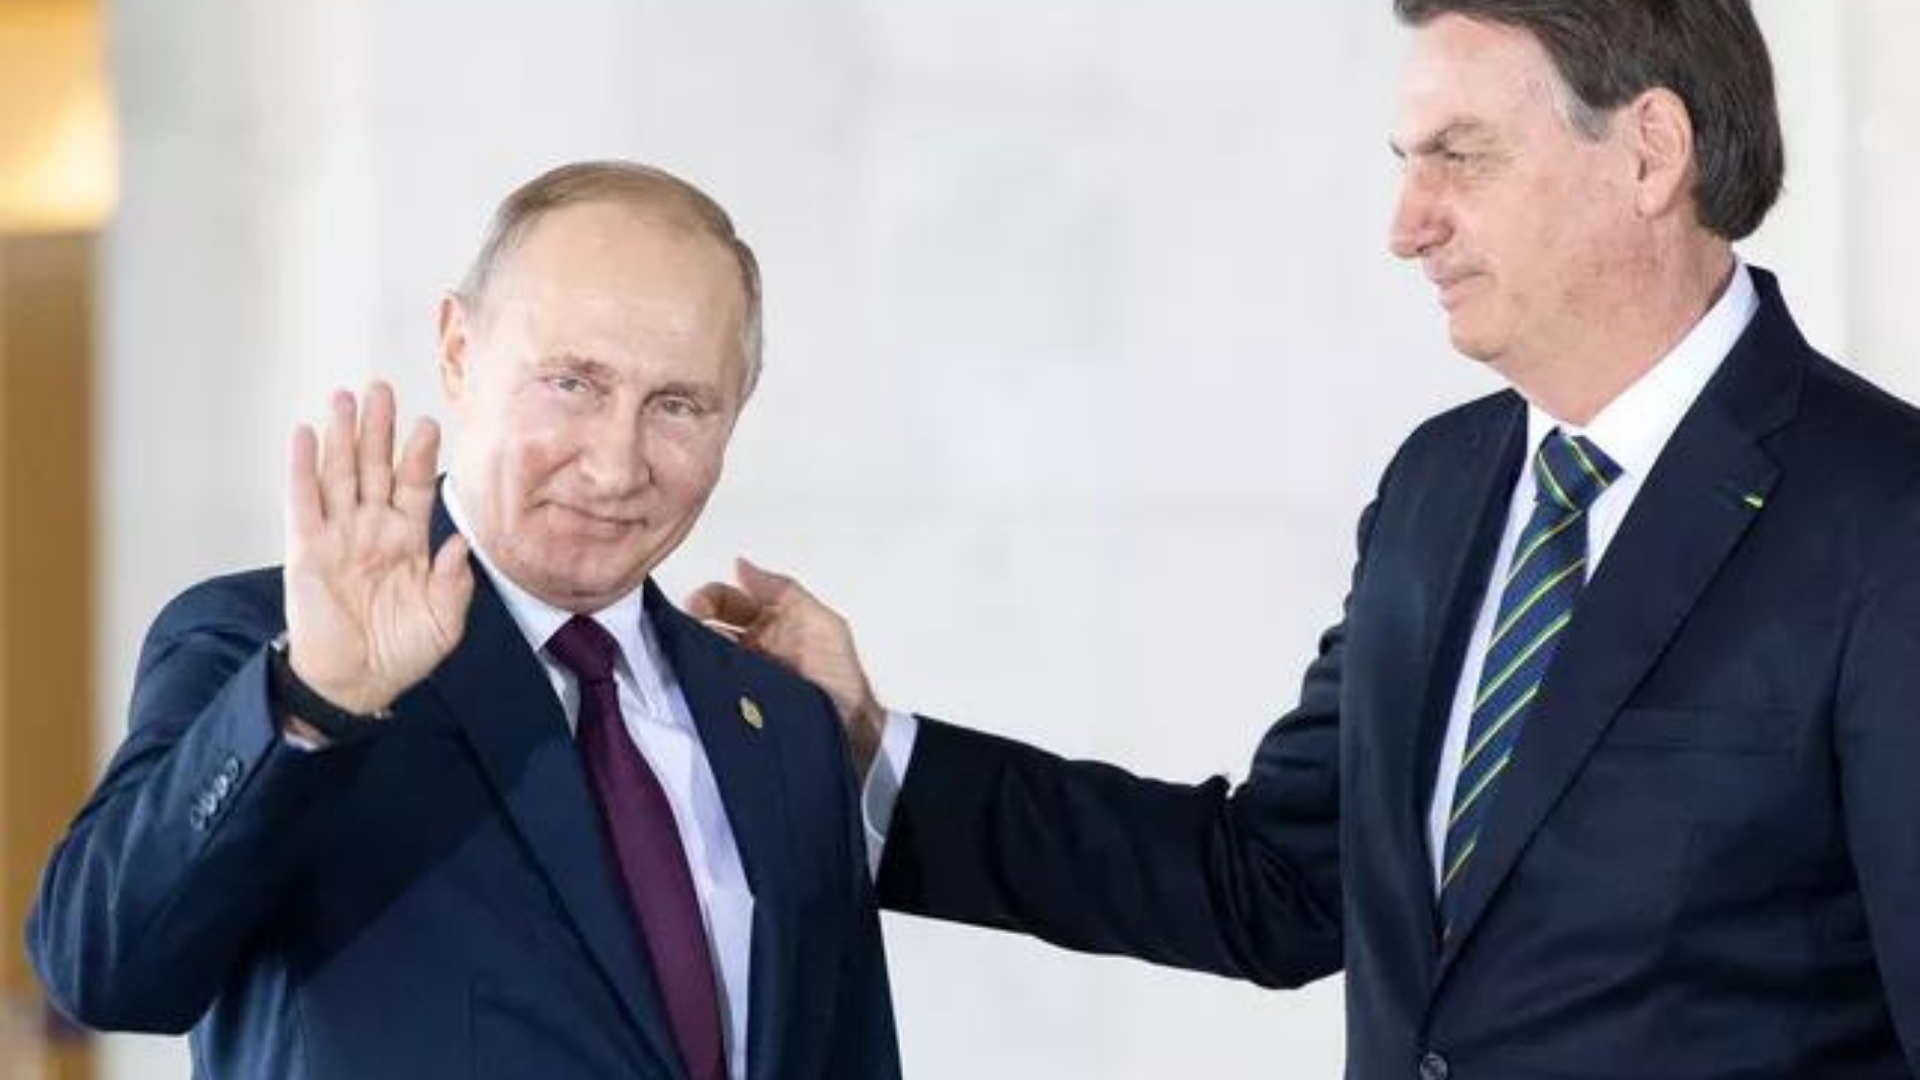 Bolsonaro comemora ausência de barreiras com a Rússia e diz que está “tudo bem”. Foto de Putin sorrindo e Bolsonaro com a mão no ombro dele.